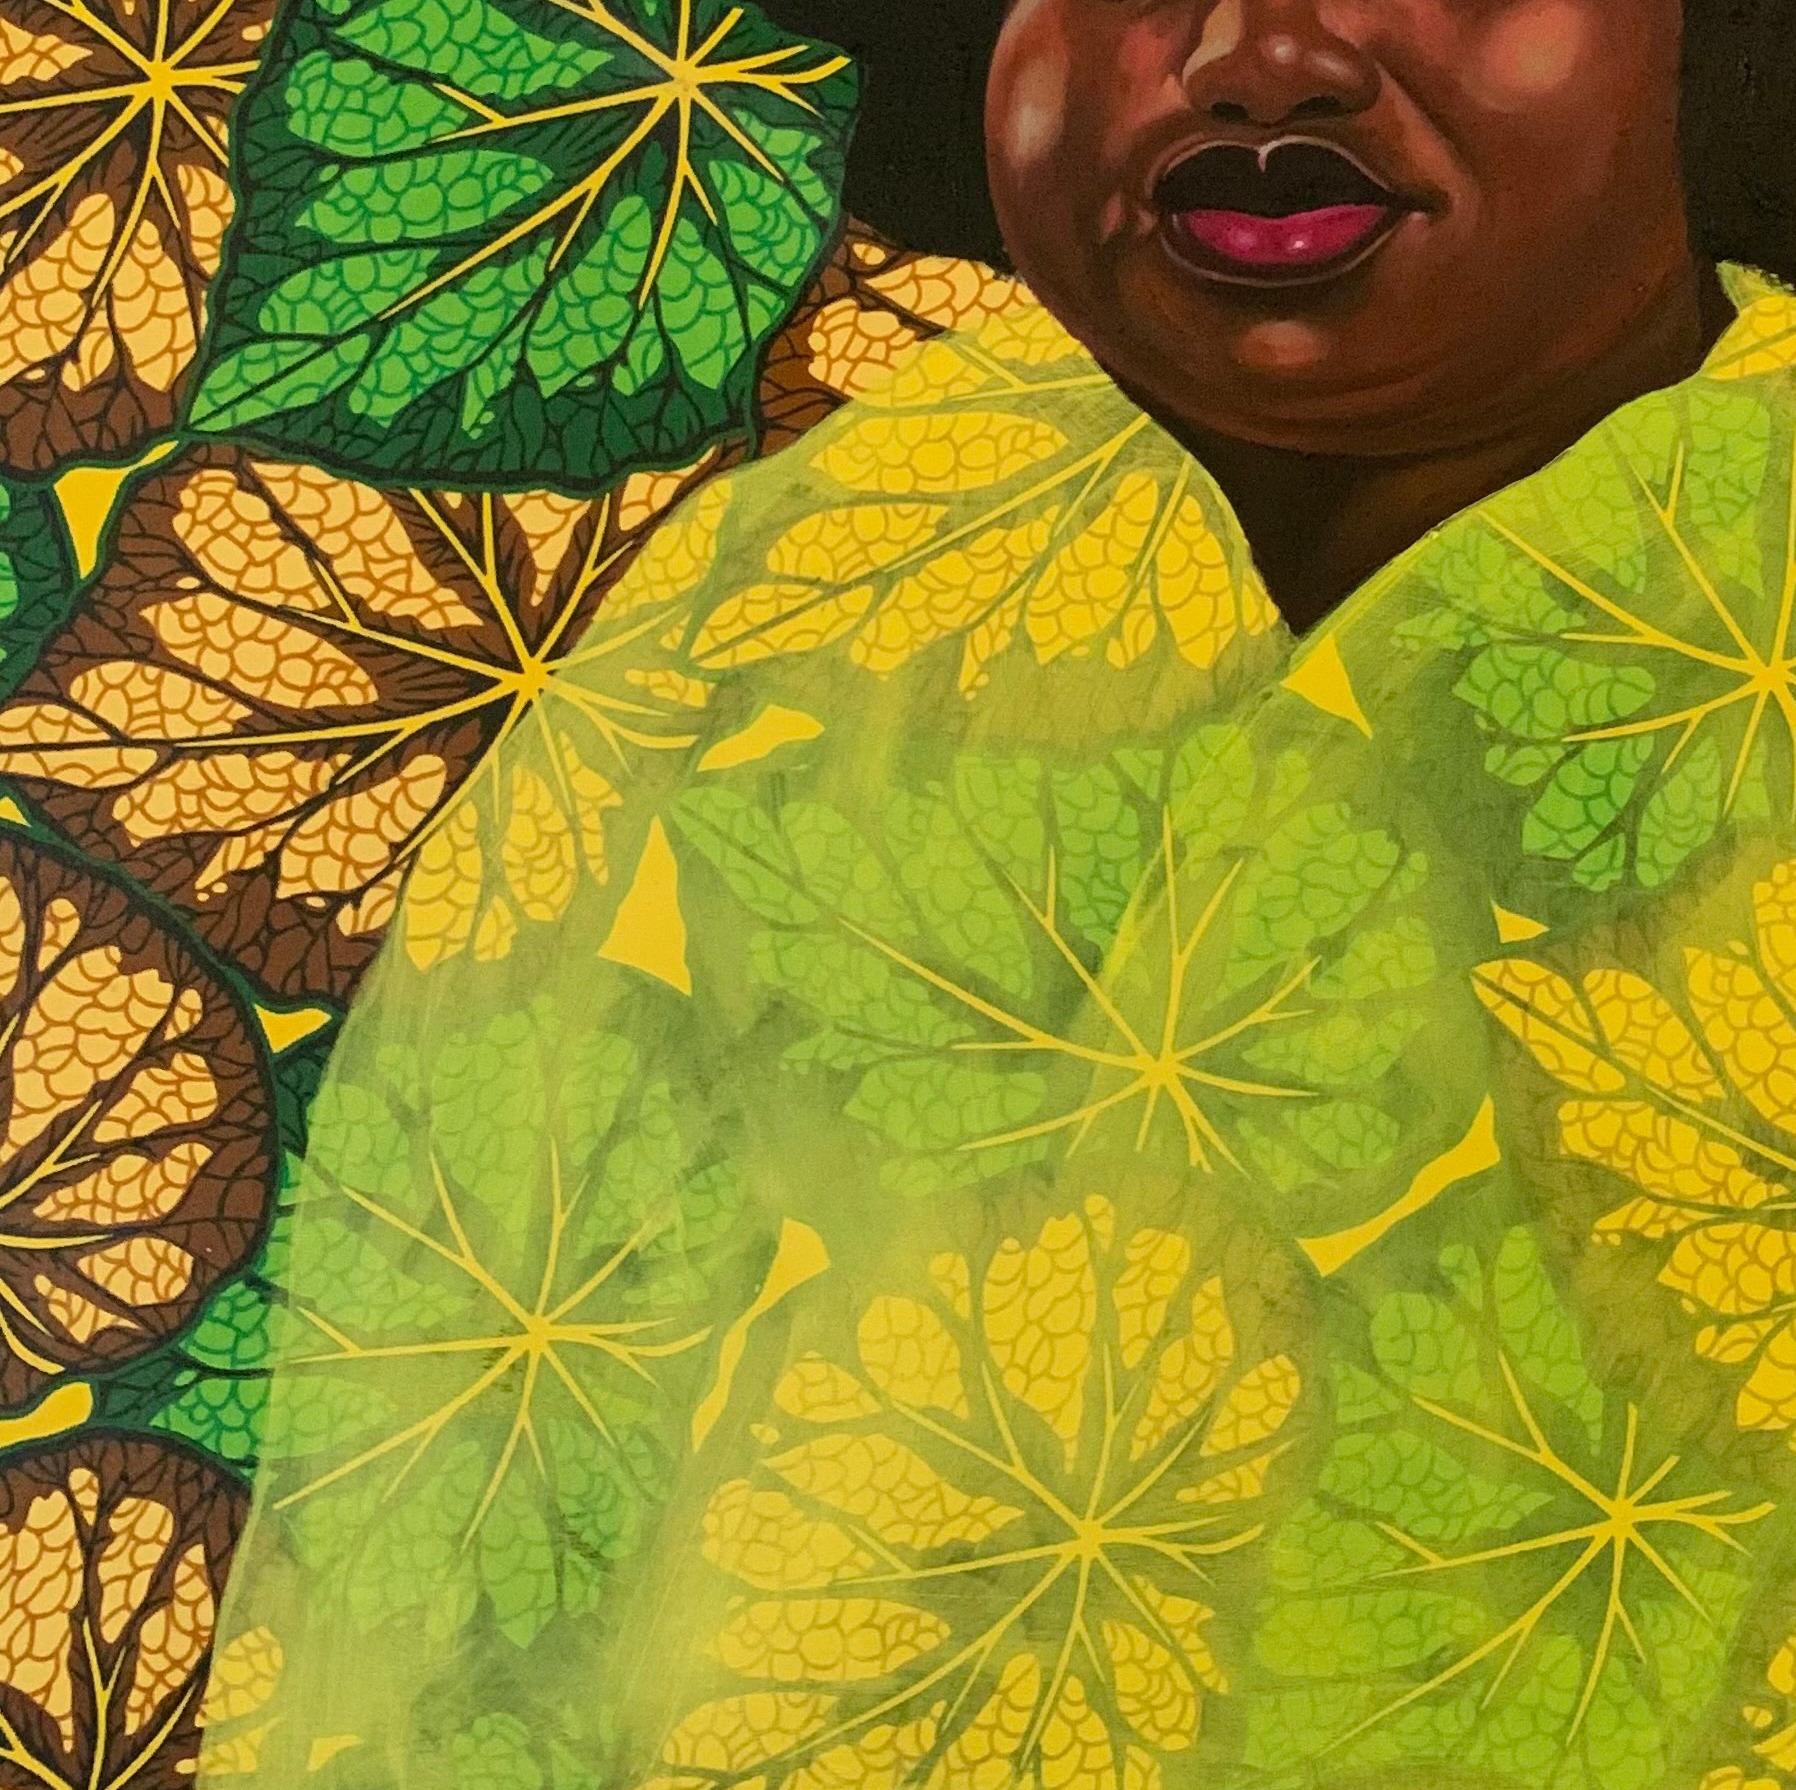 Das Gemälde ist ein beeindruckendes Porträt einer schwarzafrikanischen Frau mit einer komplizierten Afrofrisur, die die Leinwand dominiert. Die Verwendung von leuchtenden Ölfarben auf Ankara-Stoff verleiht dem Bild eine reiche Textur und ein Gefühl